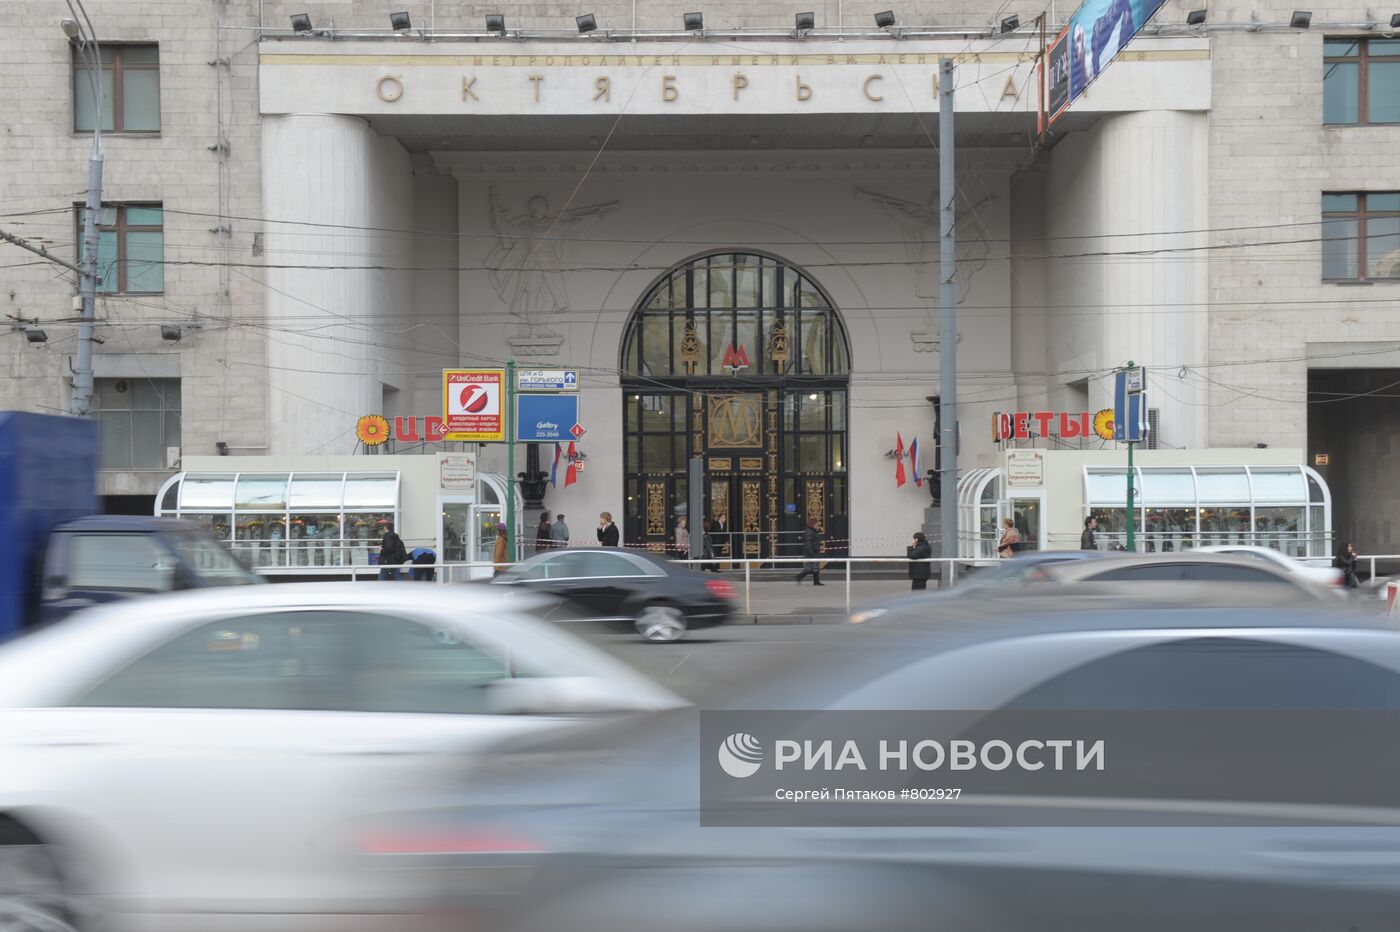 Вход на станцию метро "Октябрьская"